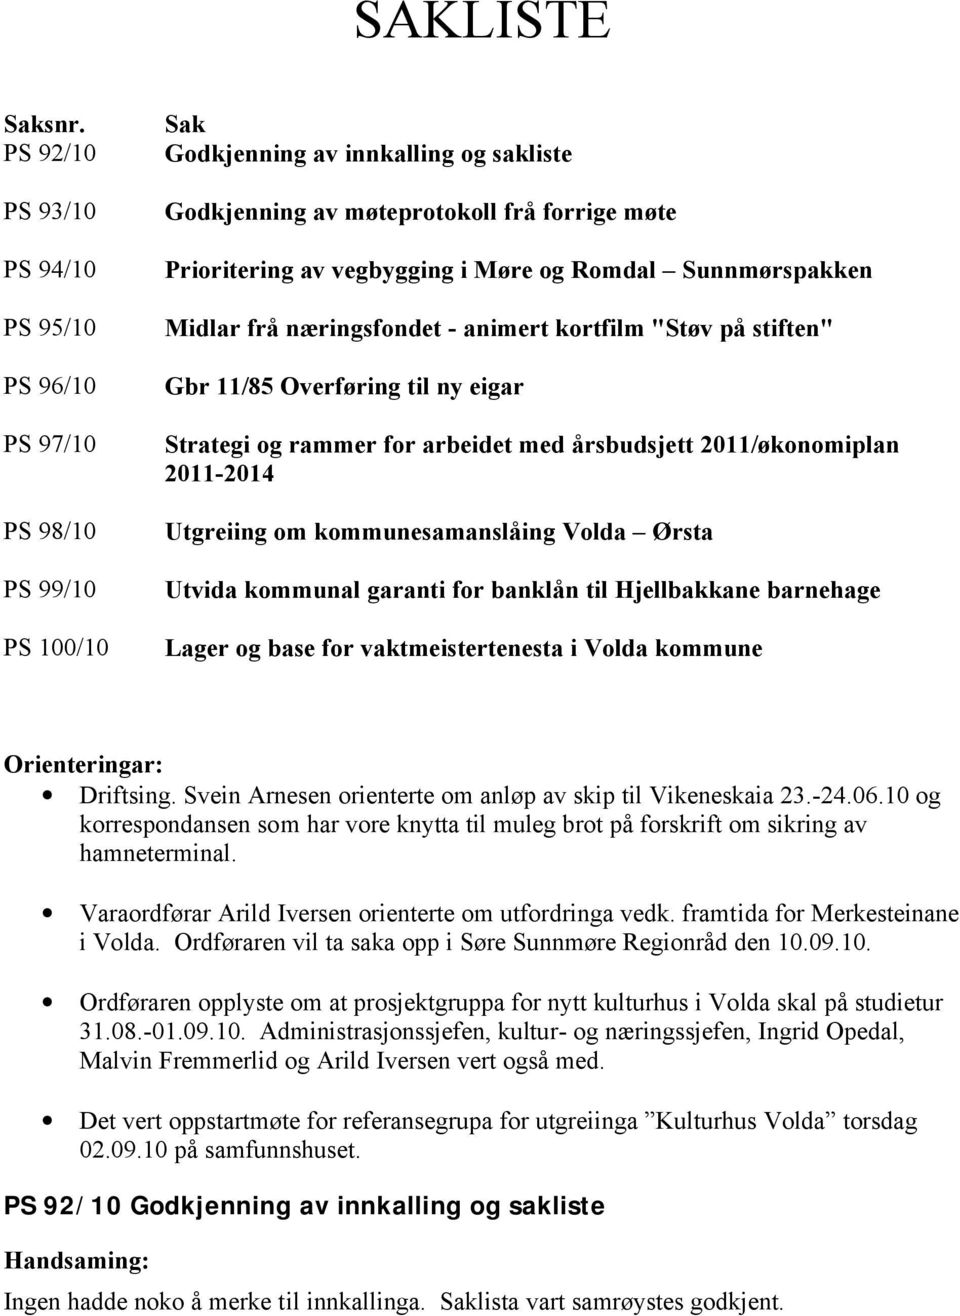 Møre og Romdal Sunnmørspakken Midlar frå næringsfondet - animert kortfilm "Støv på stiften" Gbr 11/85 Overføring til ny eigar Strategi og rammer for arbeidet med årsbudsjett 2011/økonomiplan